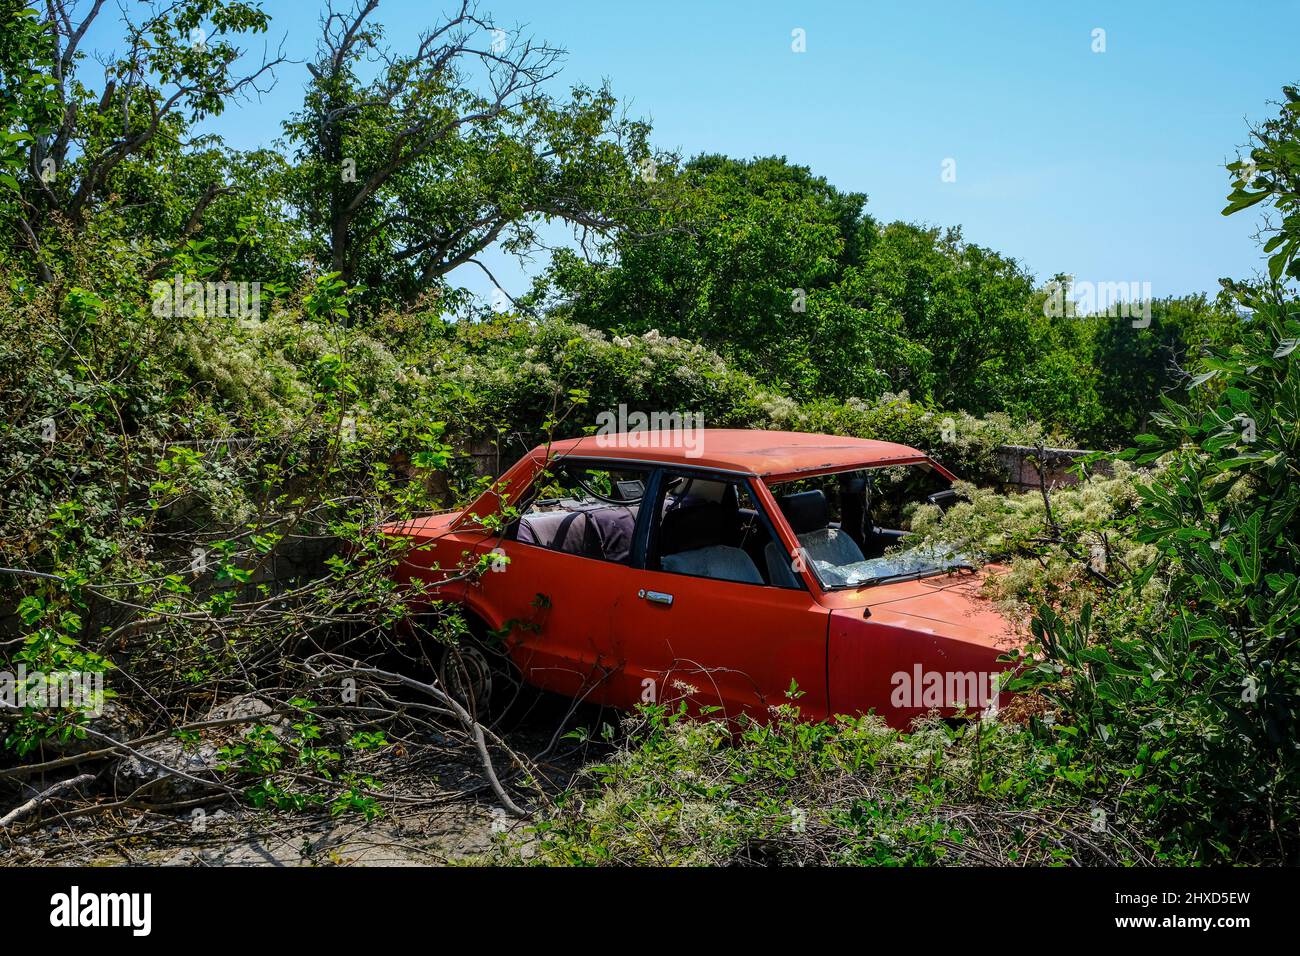 Theologios, Thassos, Grèce - ancienne, rouillé voiture de pourrissement rouge se trouve dans le paysage et est lentement surcultivé par des plantes dans le village de montagne de Theologios sur l'île de Thassos. Banque D'Images